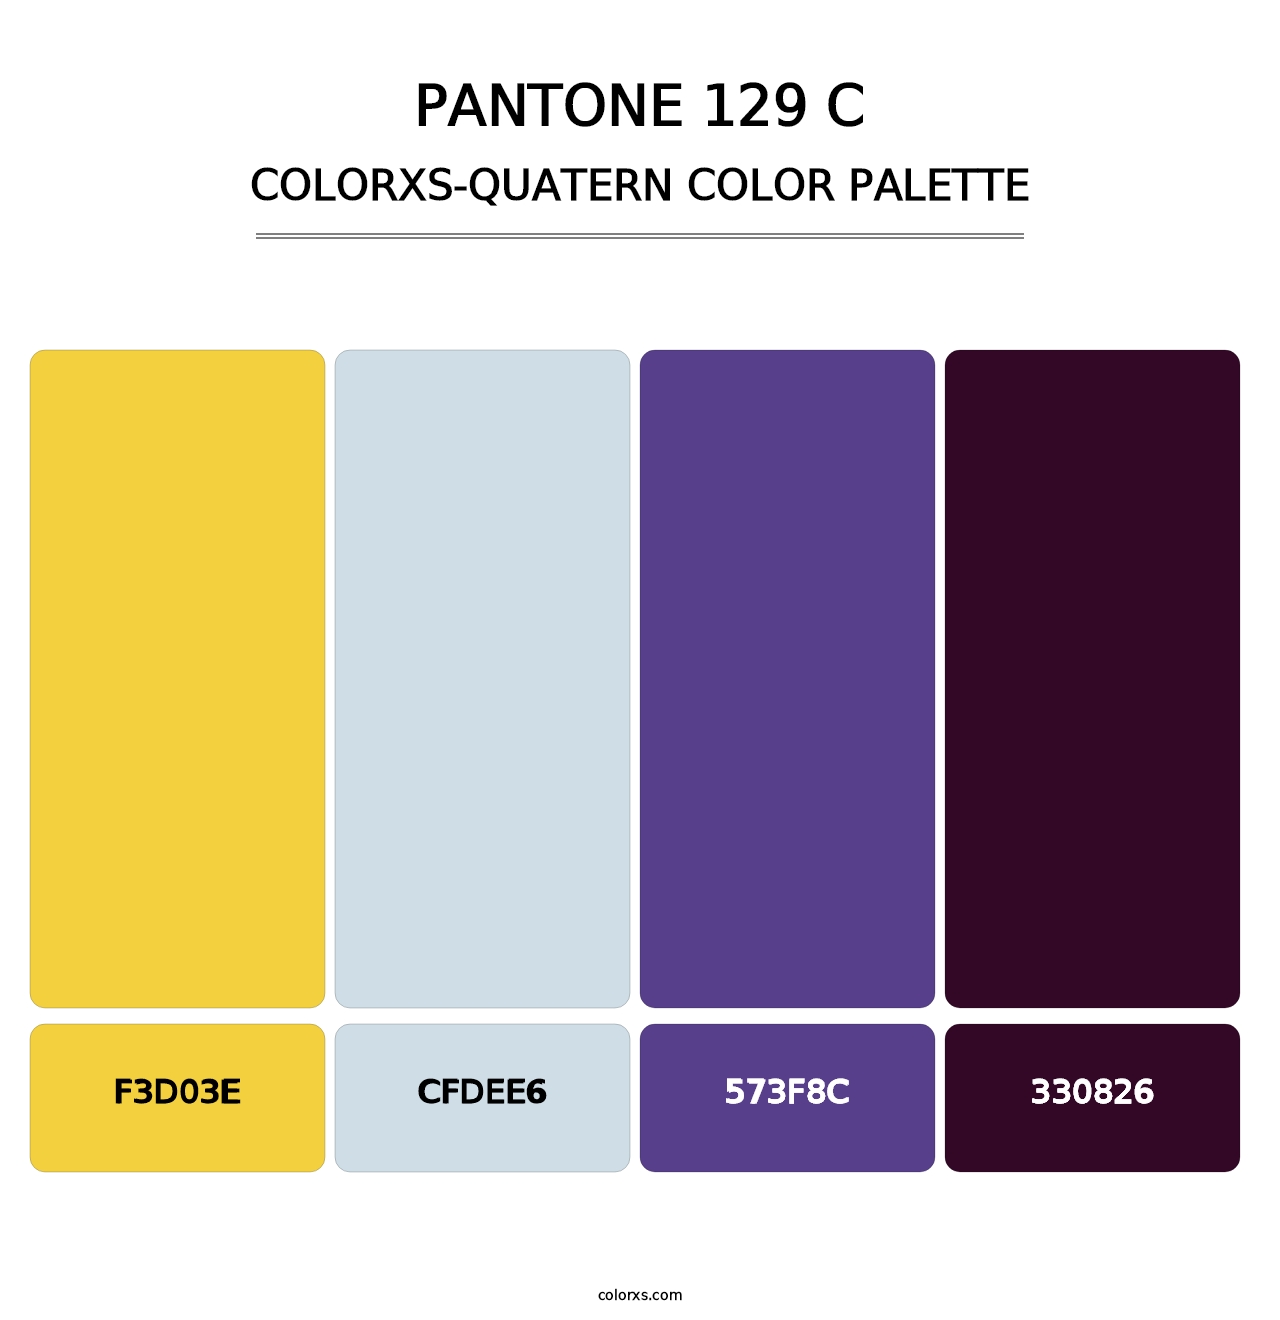 PANTONE 129 C - Colorxs Quatern Palette